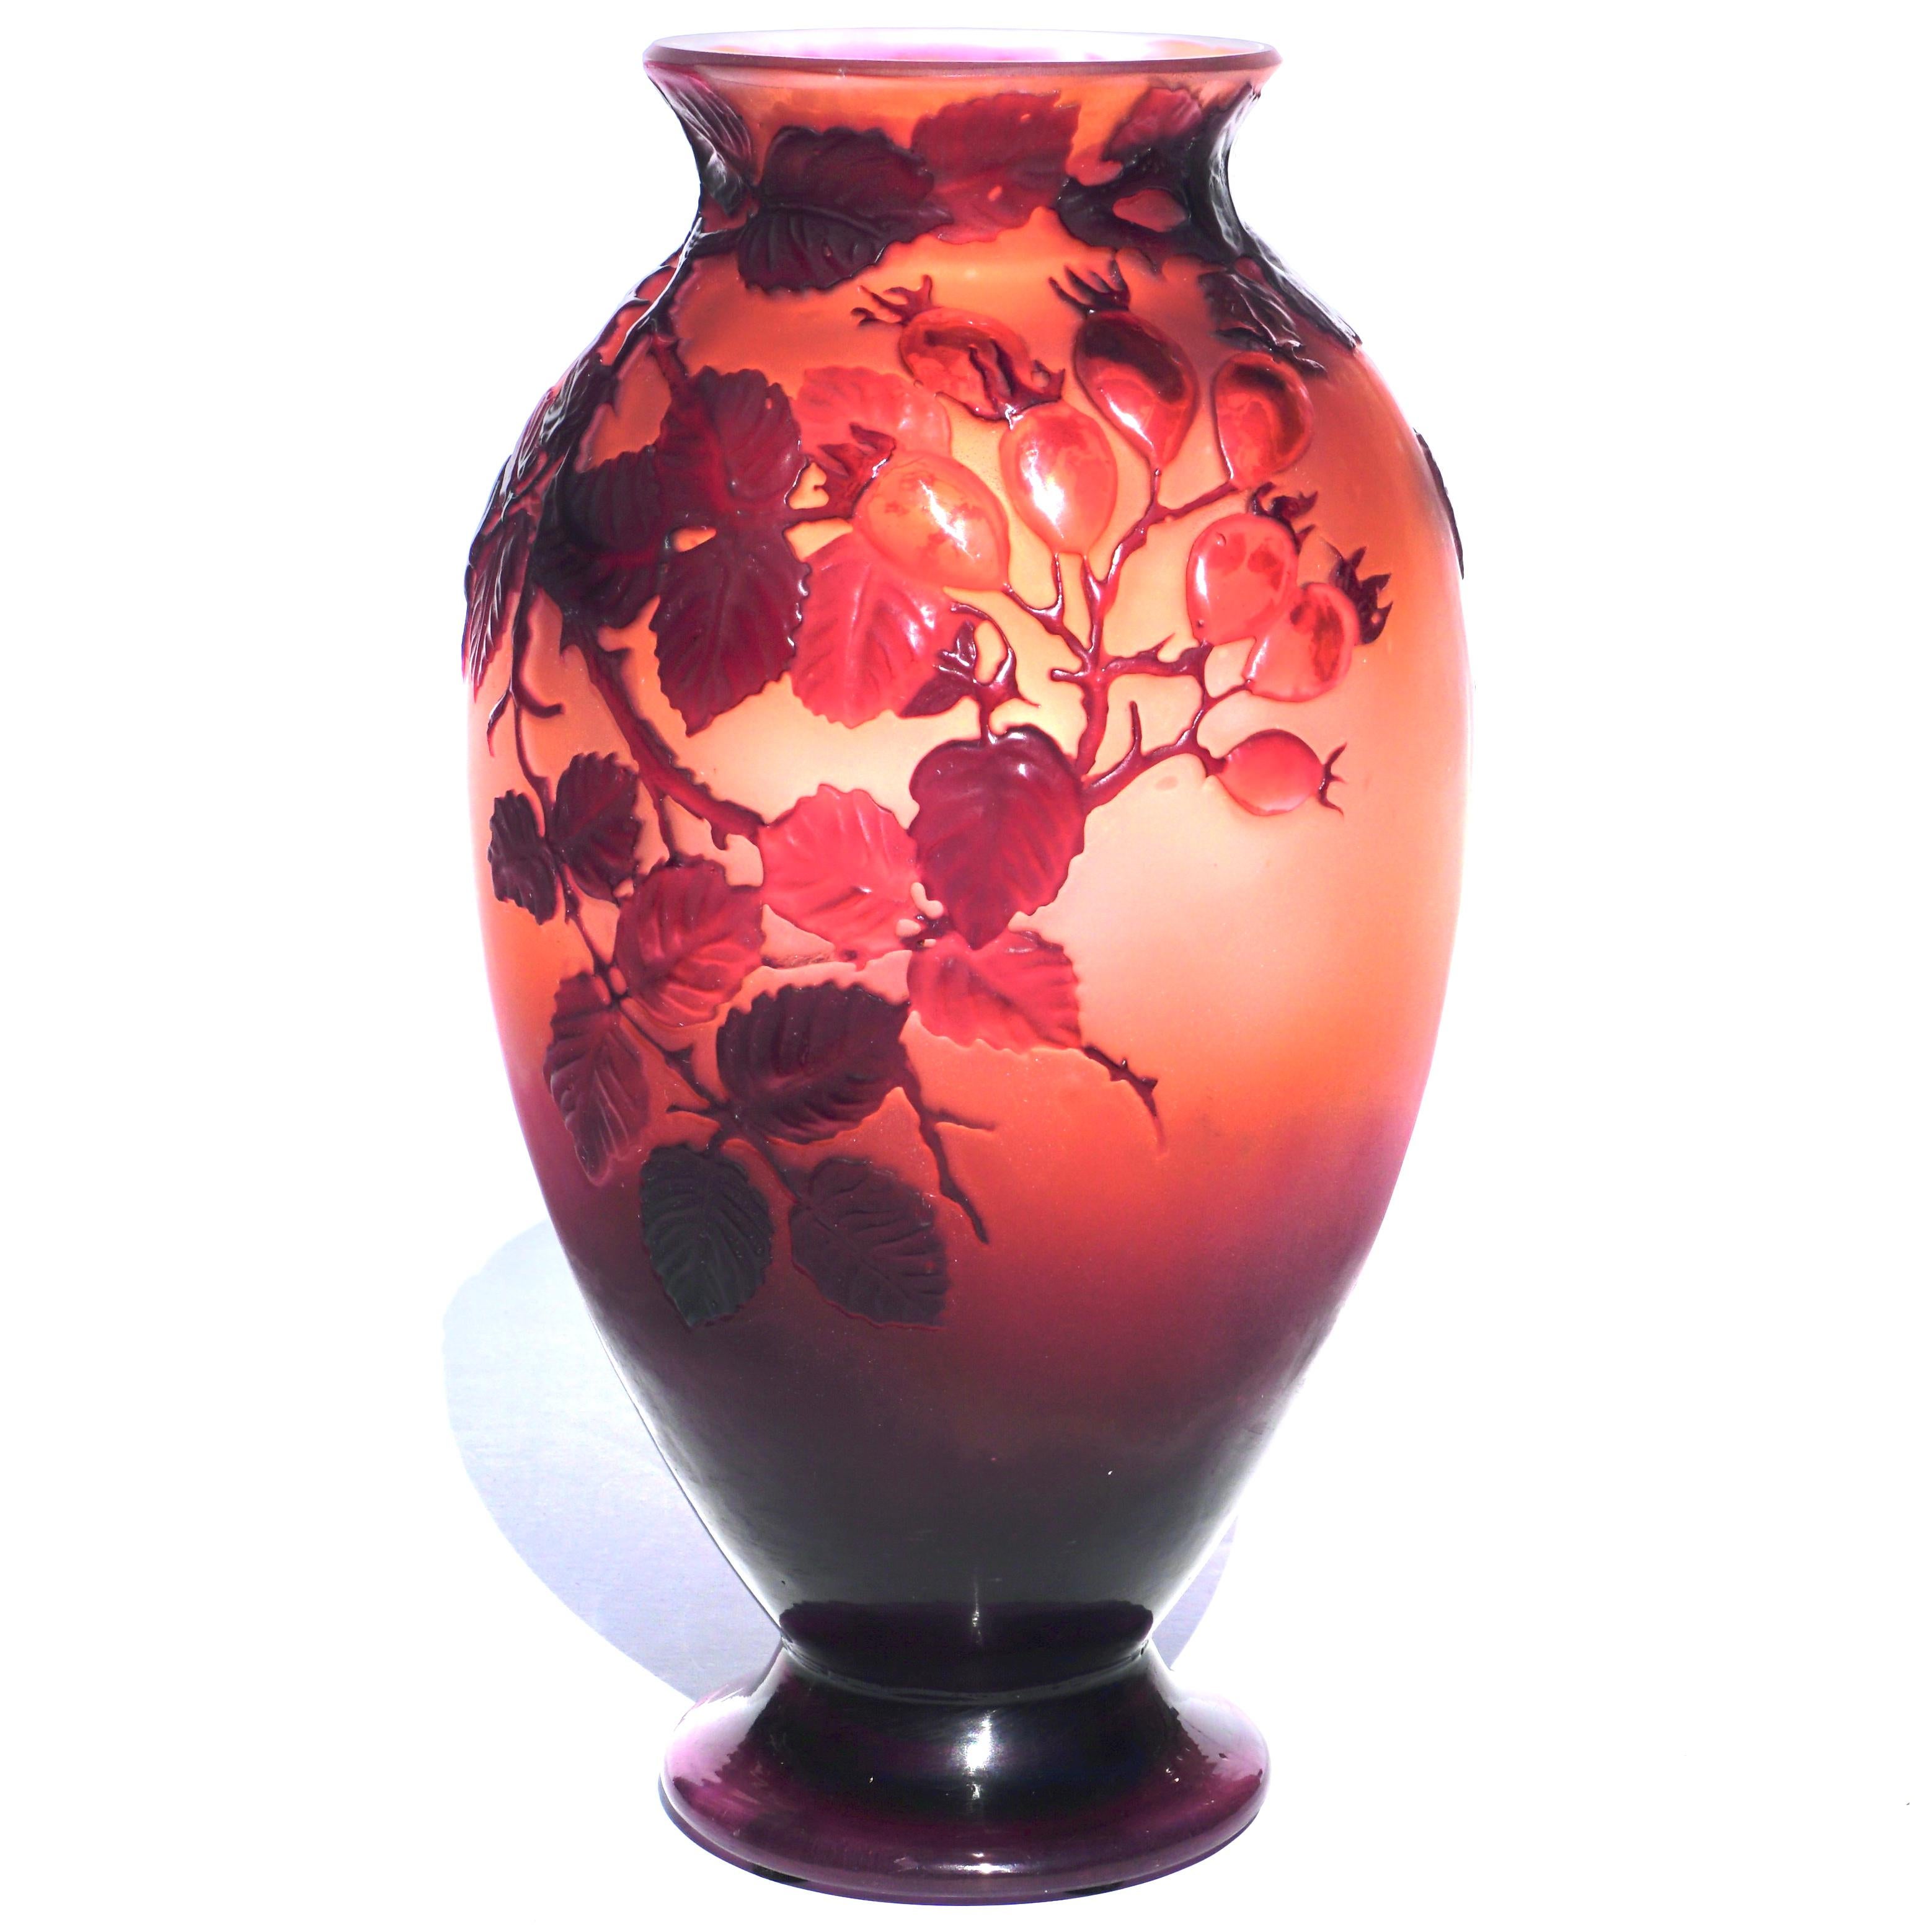 Émile Gallé (Fr. 1846 - 1904) Vase Art Nouveau en forme de camée rouge soufflé à la rose sauvage.
Vase Wild Rose, vers 1900-1910
Verre camée soufflé au moule. 
Hauteur : 9,35 pouces (24 cm) diamètre : 5,5 pouces
Signé en camée